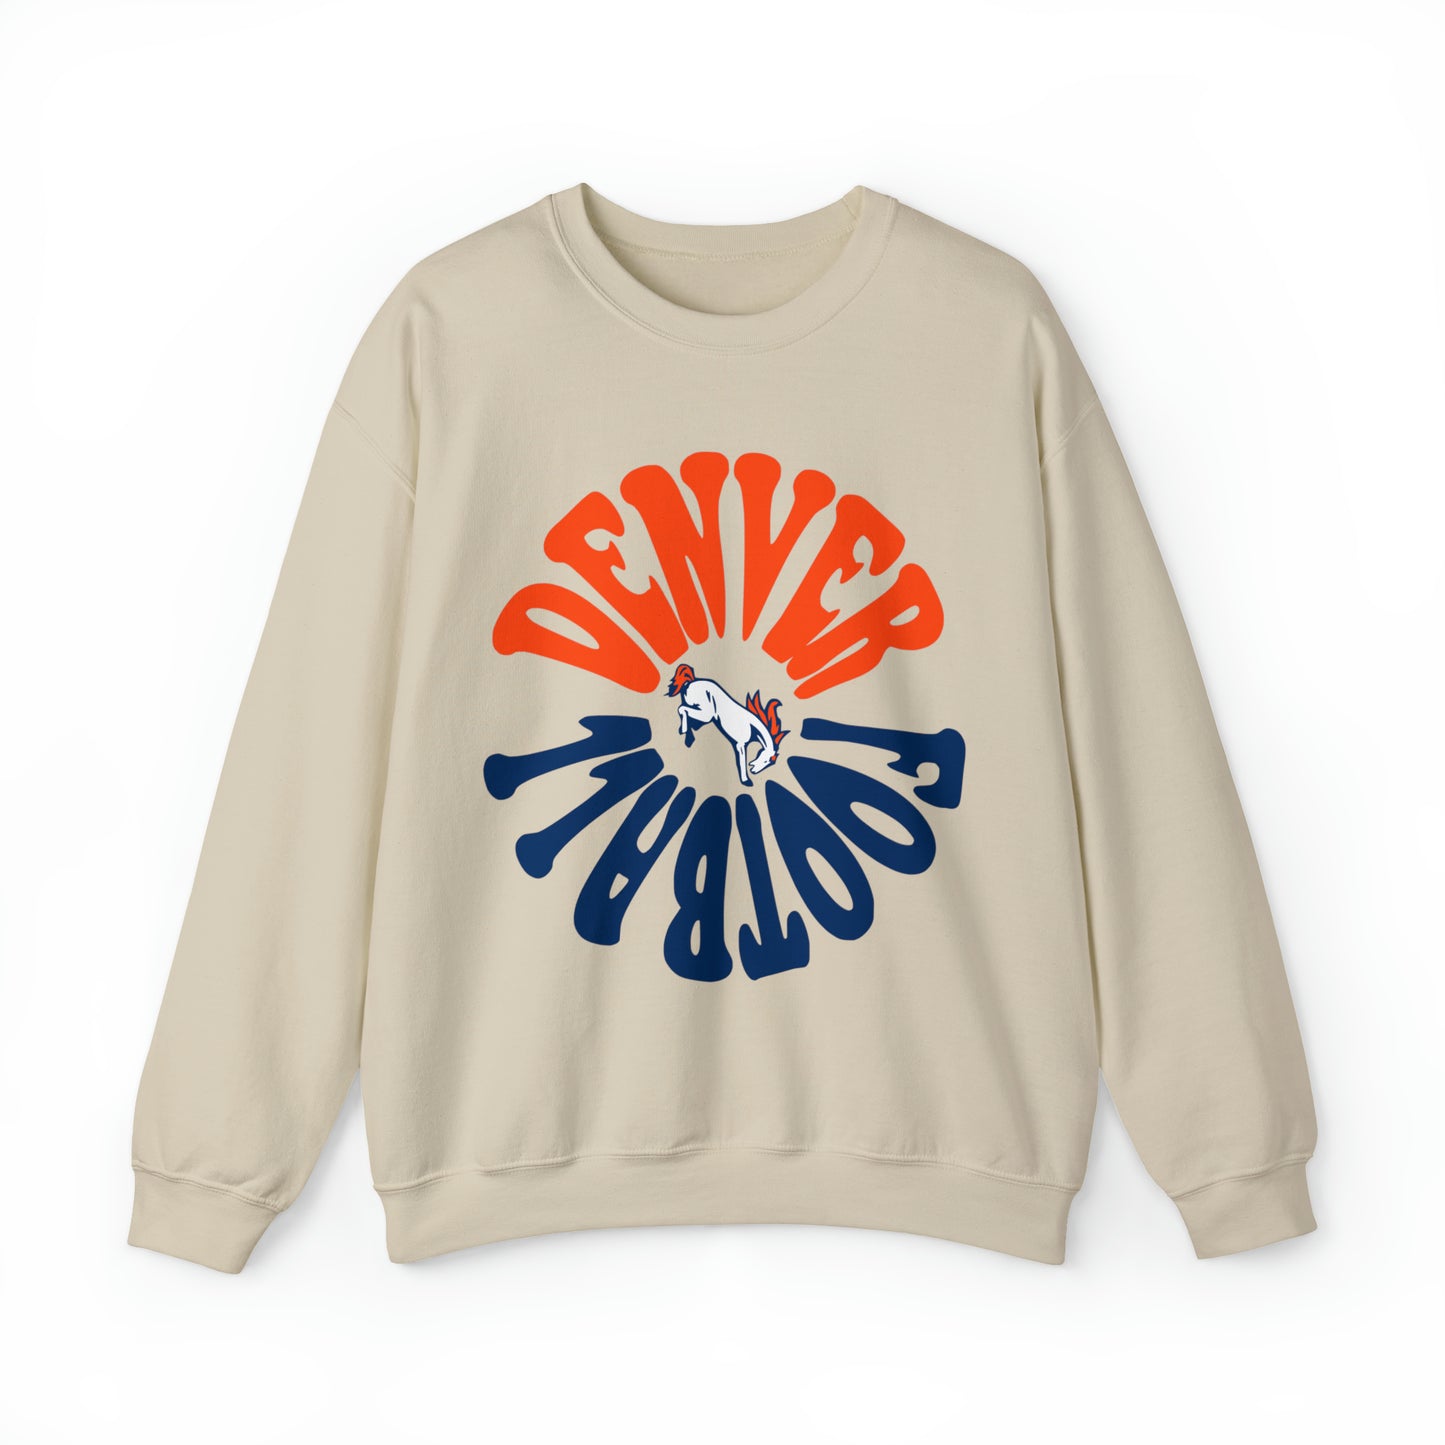 Retro Denver Broncos Crewneck Sweatshirt - Vintage Colorado Football Style Apparel - Men's & Women's Unisex Sizing